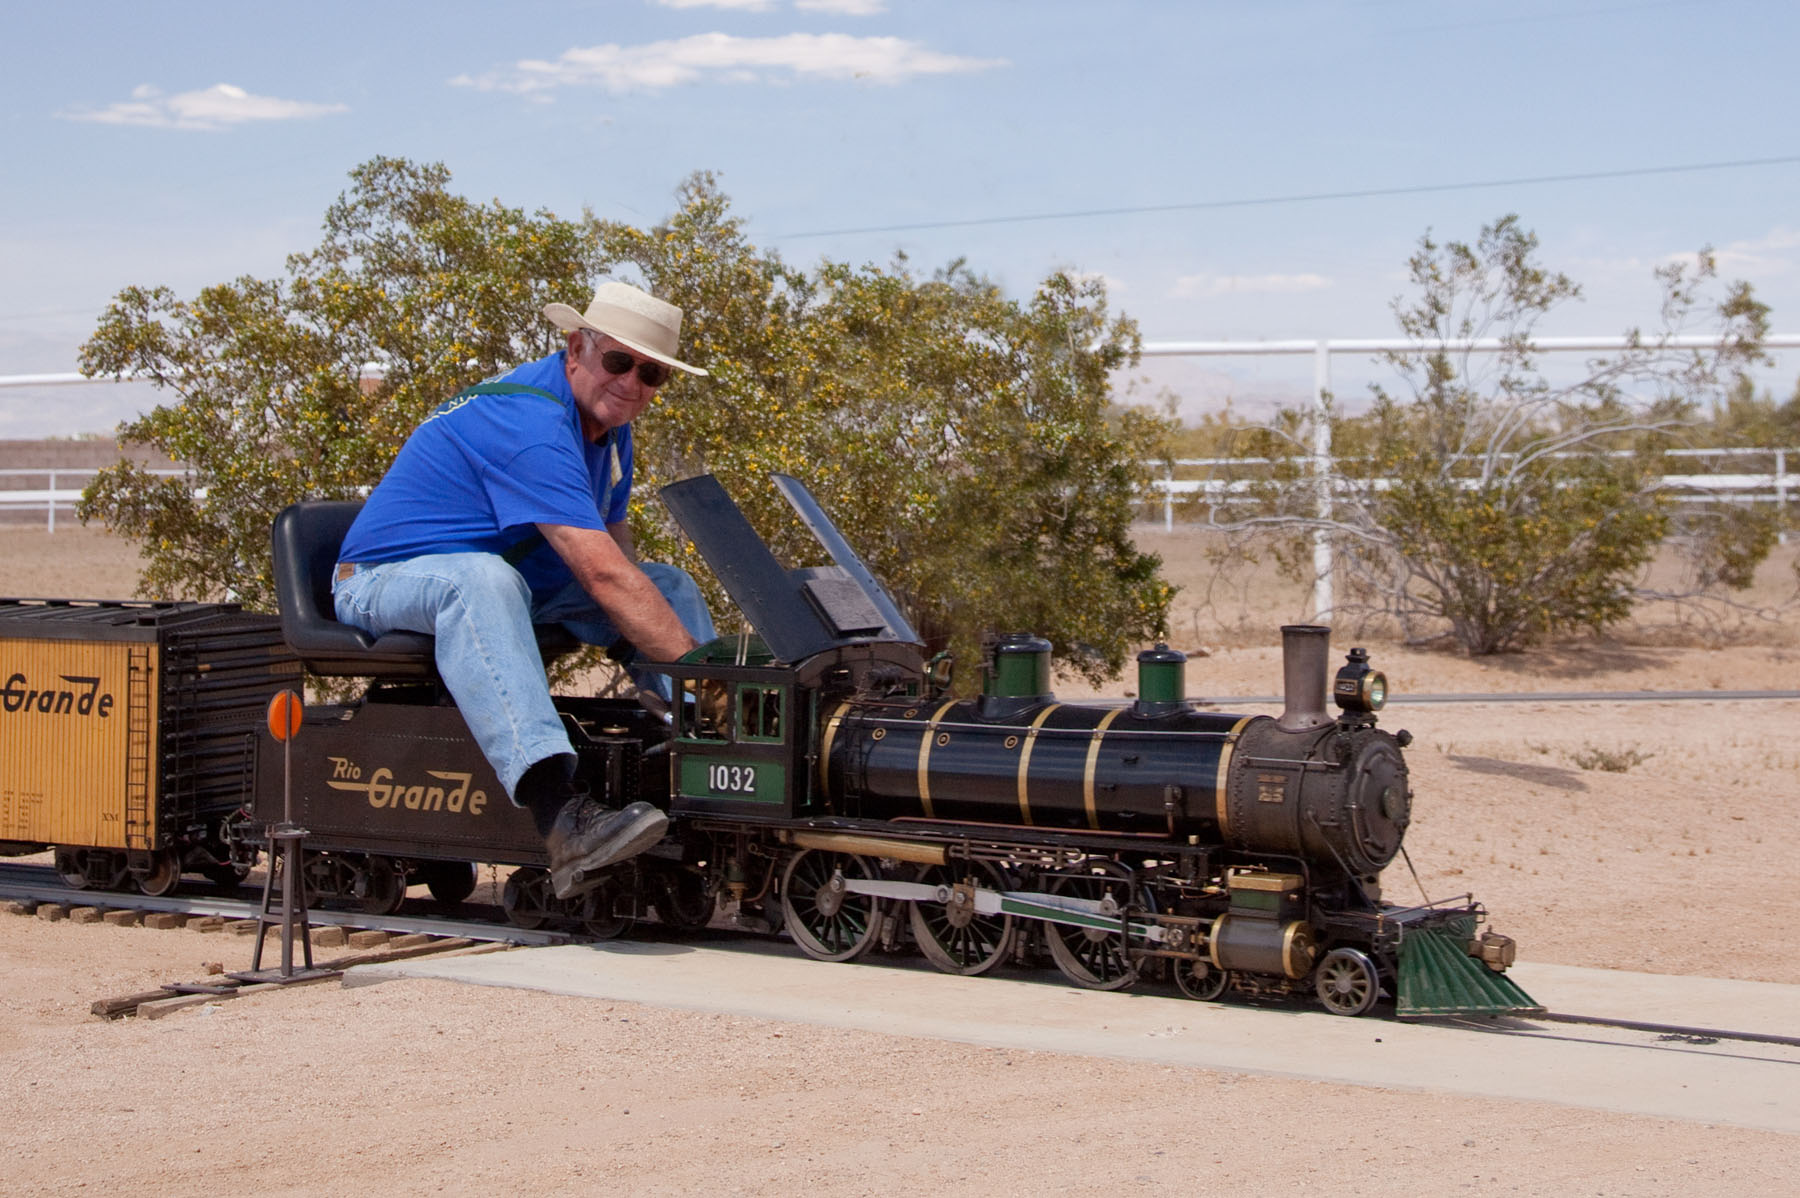 garden steam locomotive for sale